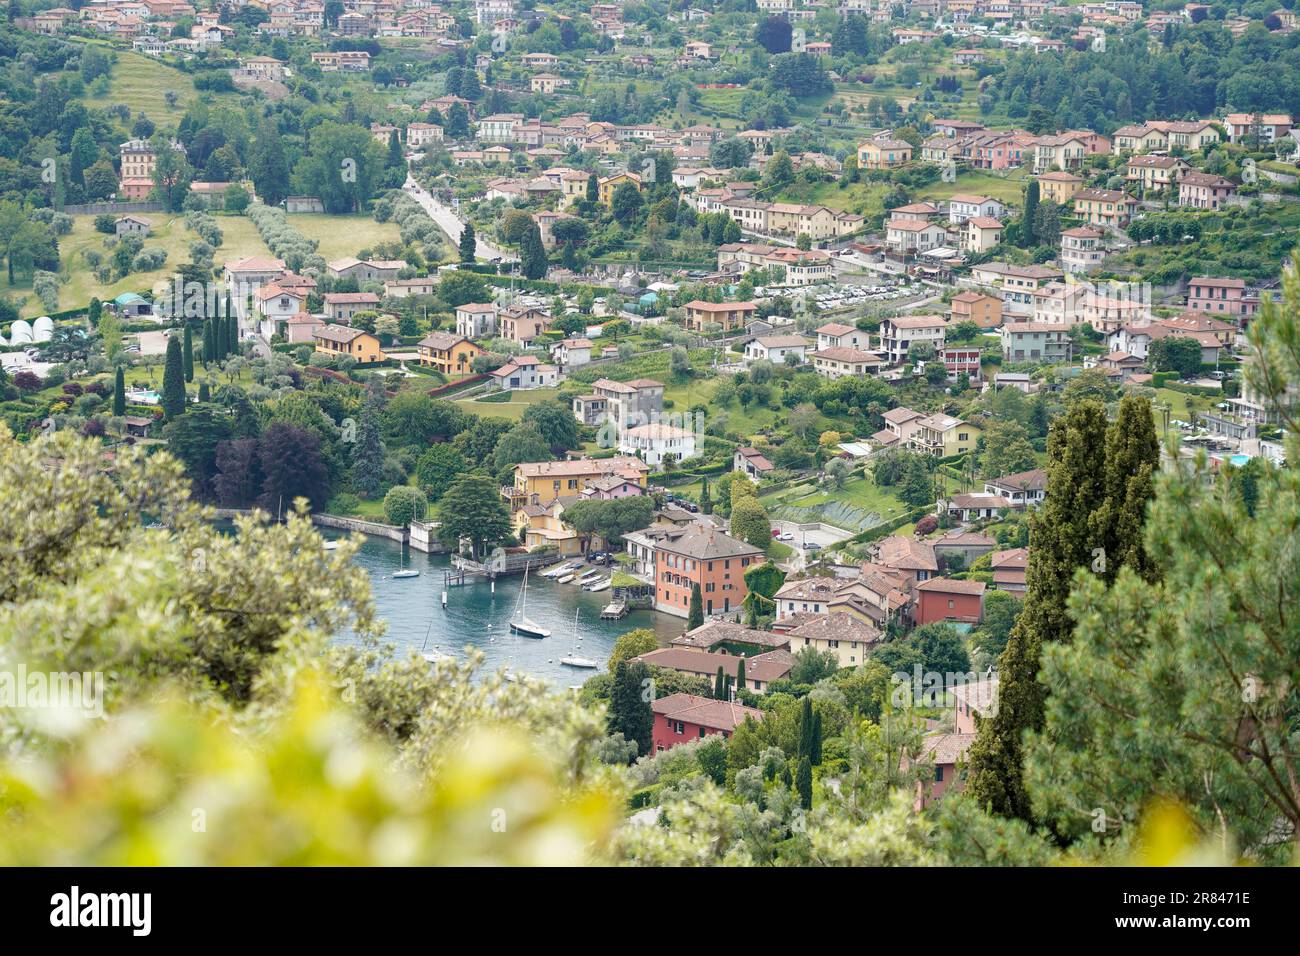 The view of Bellagio and Pescallo from the gardens of Villa Serbelloni Stock Photo